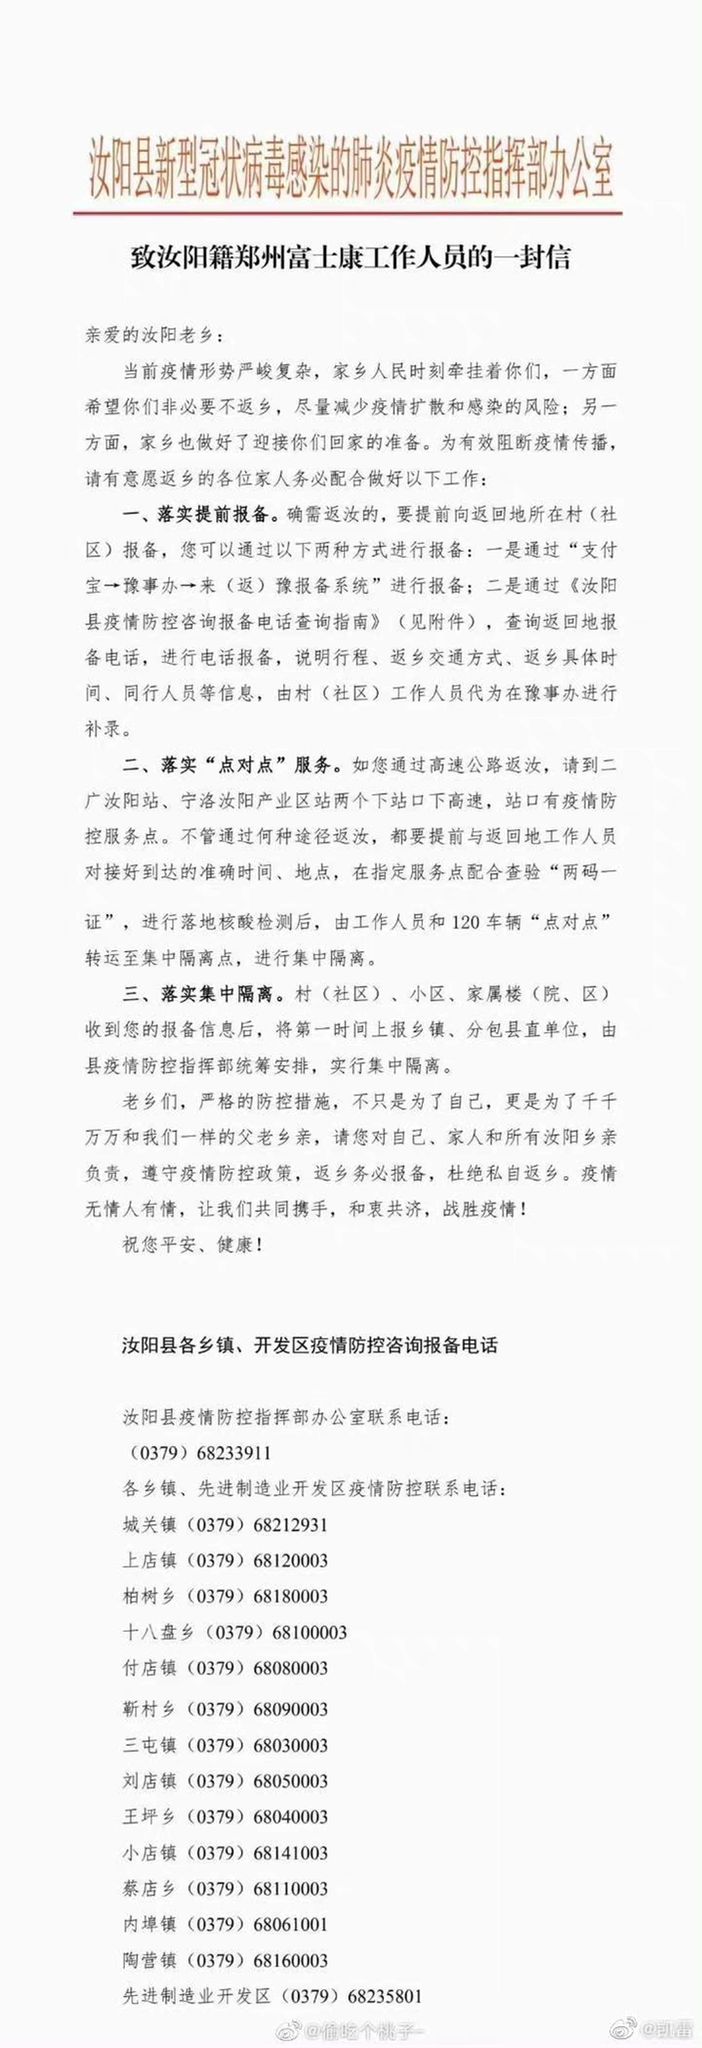 河南禹州市等五地發佈「致在富士康工作人員的公開信」。網圖